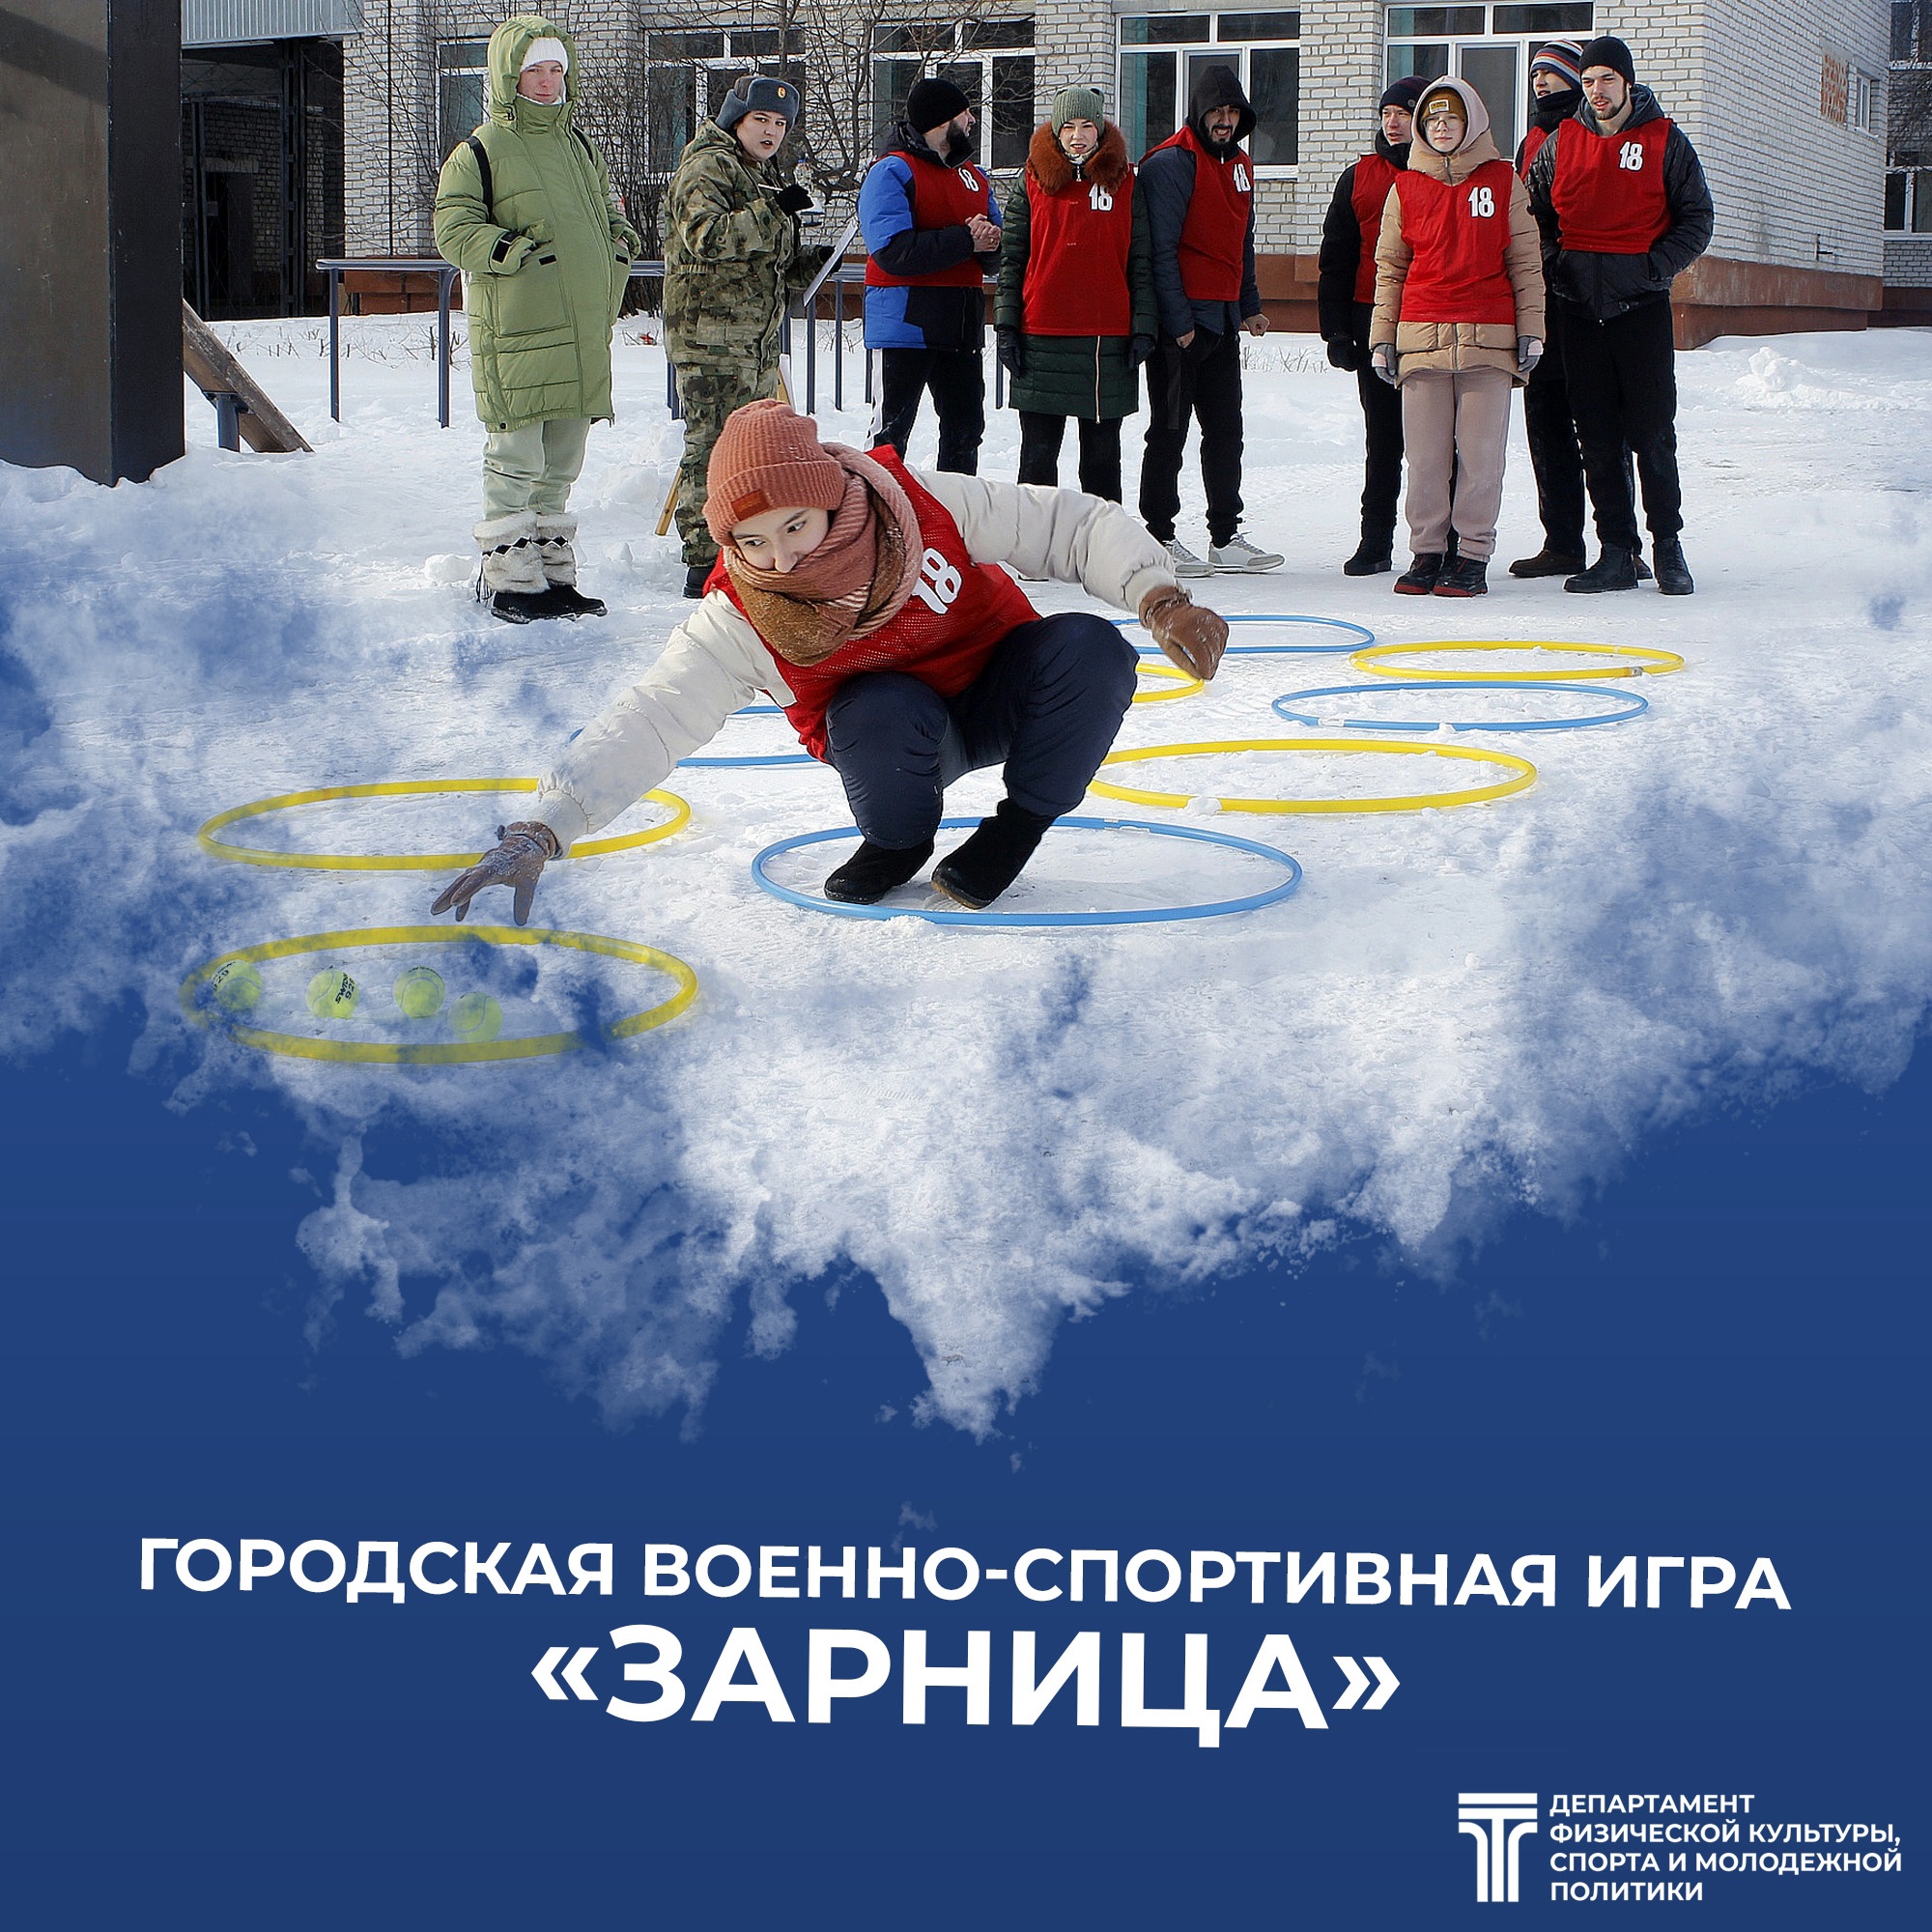  17 февраля в 11:00 на территории МАОУ «Гимназия имени Н.Д. Лицмана» состоится городская военно-спортивная игра «Зарница»